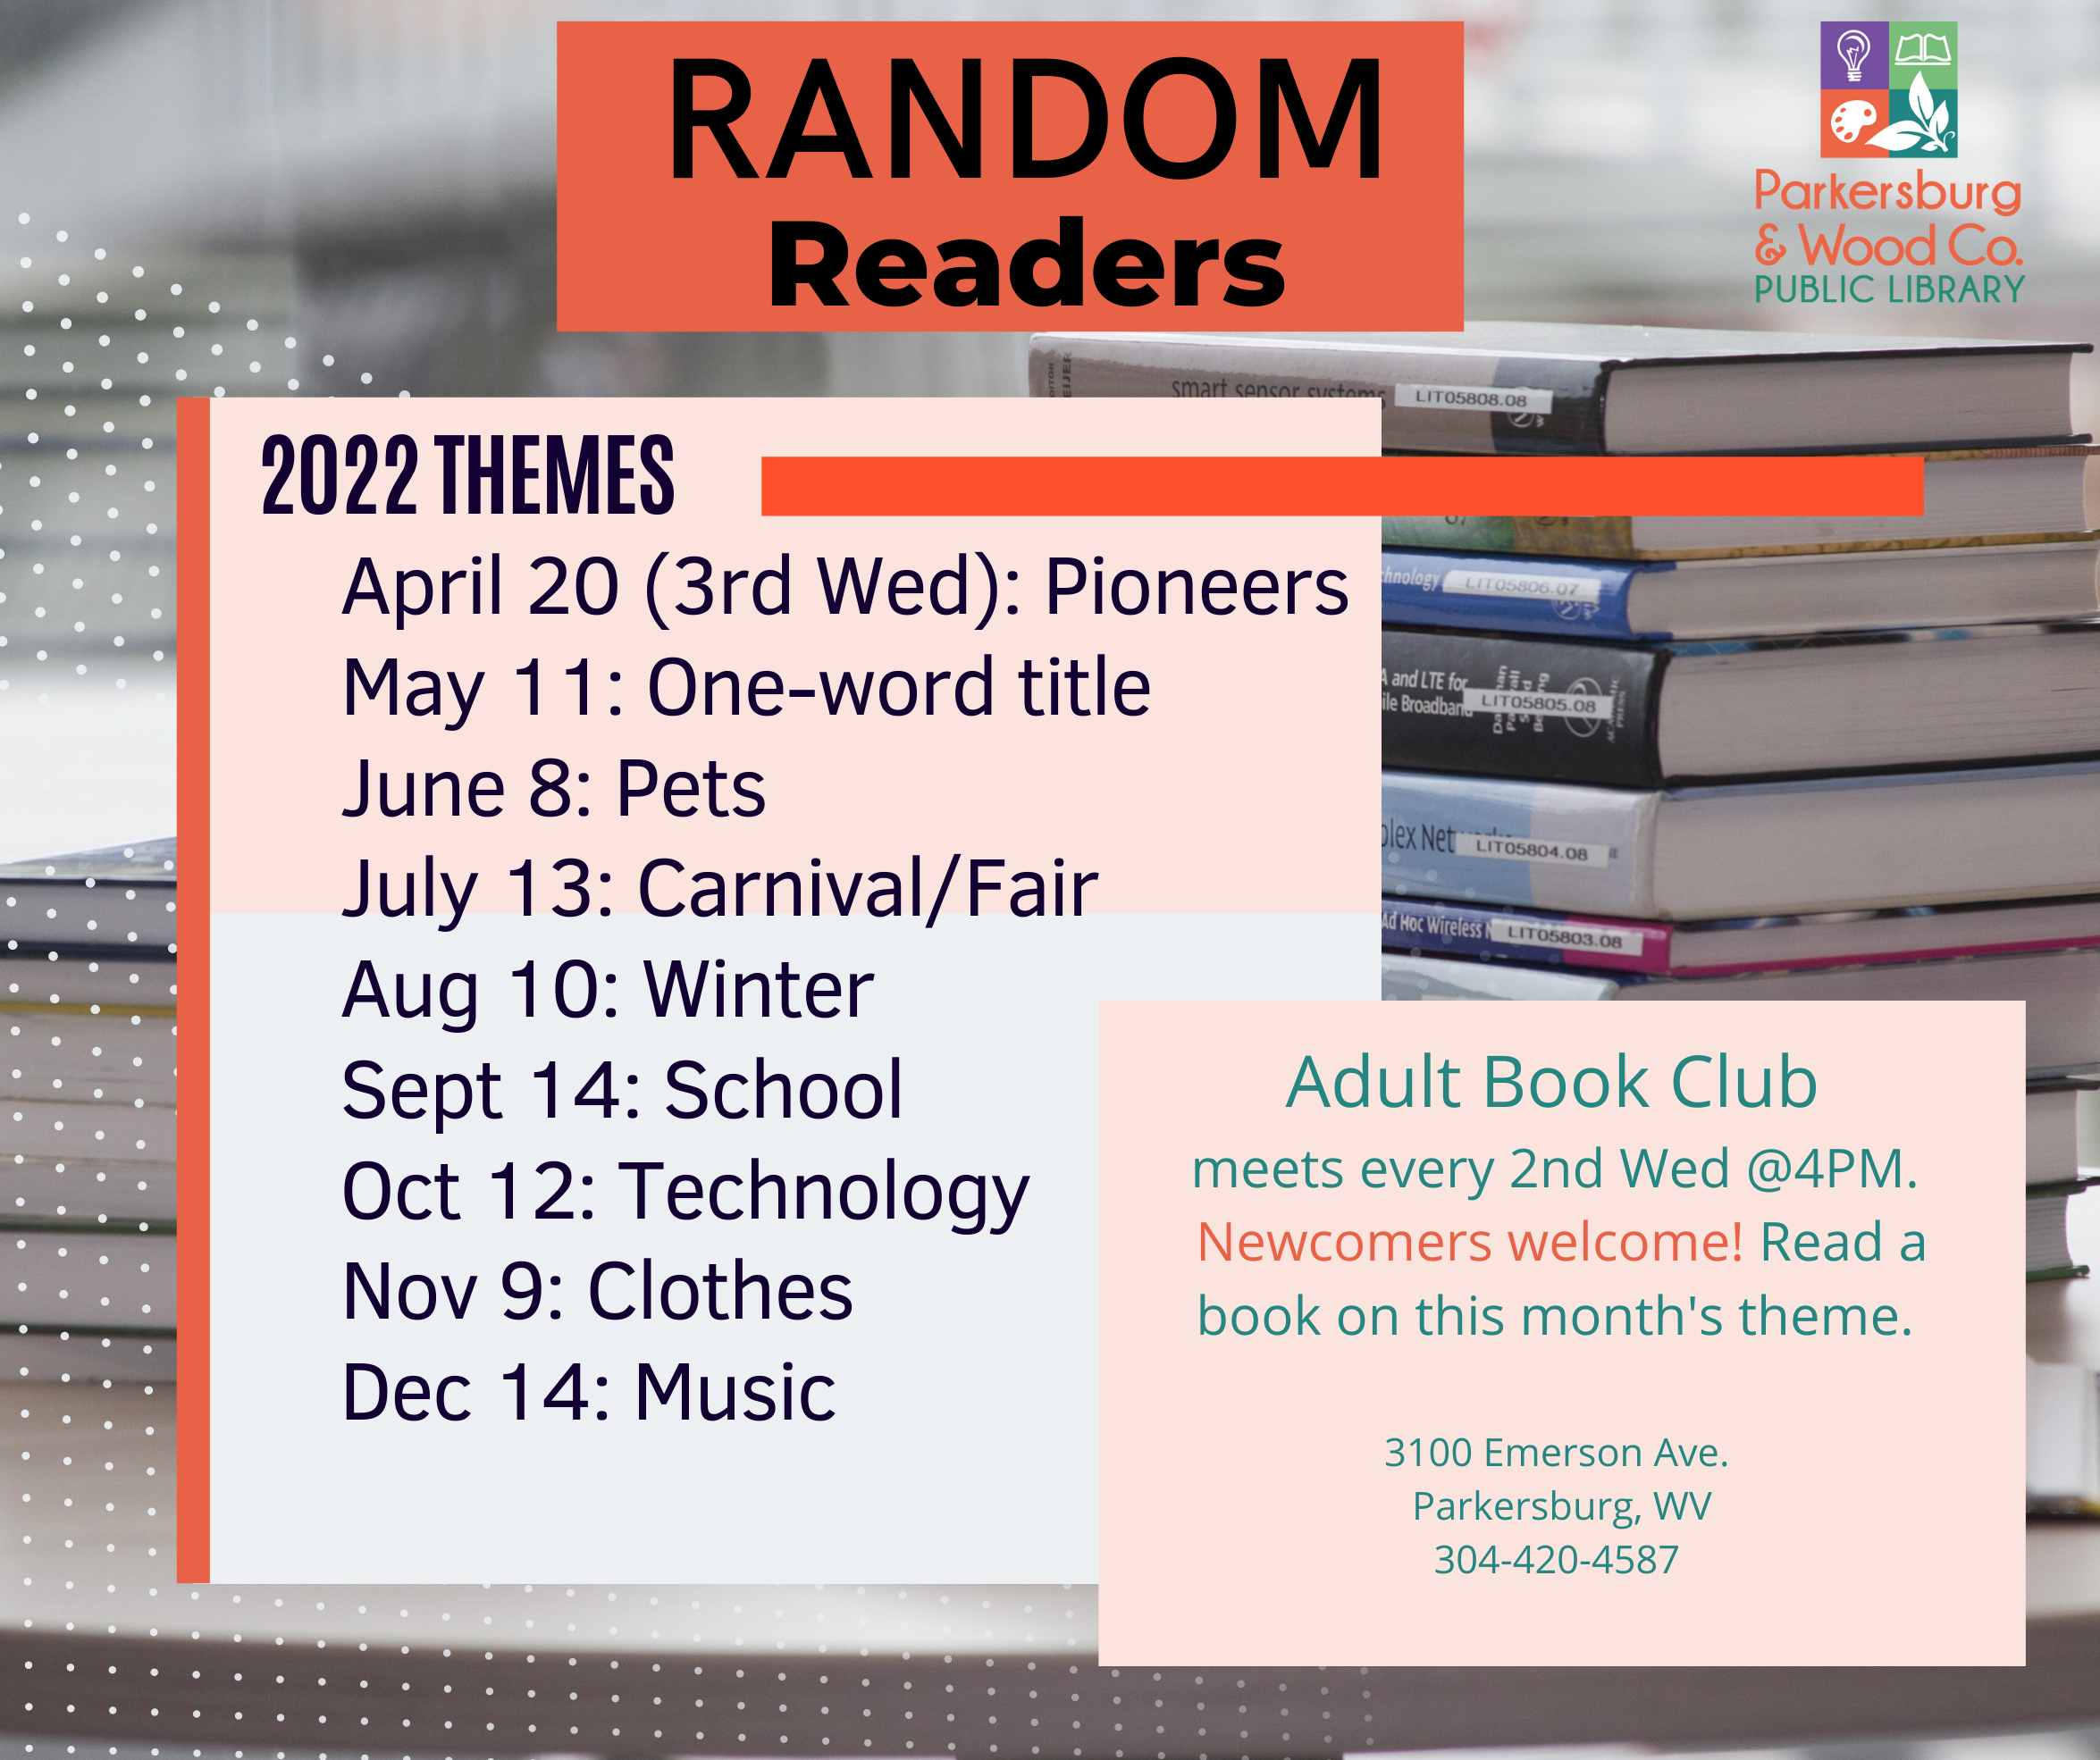 Random Readers Book Club at Emerson